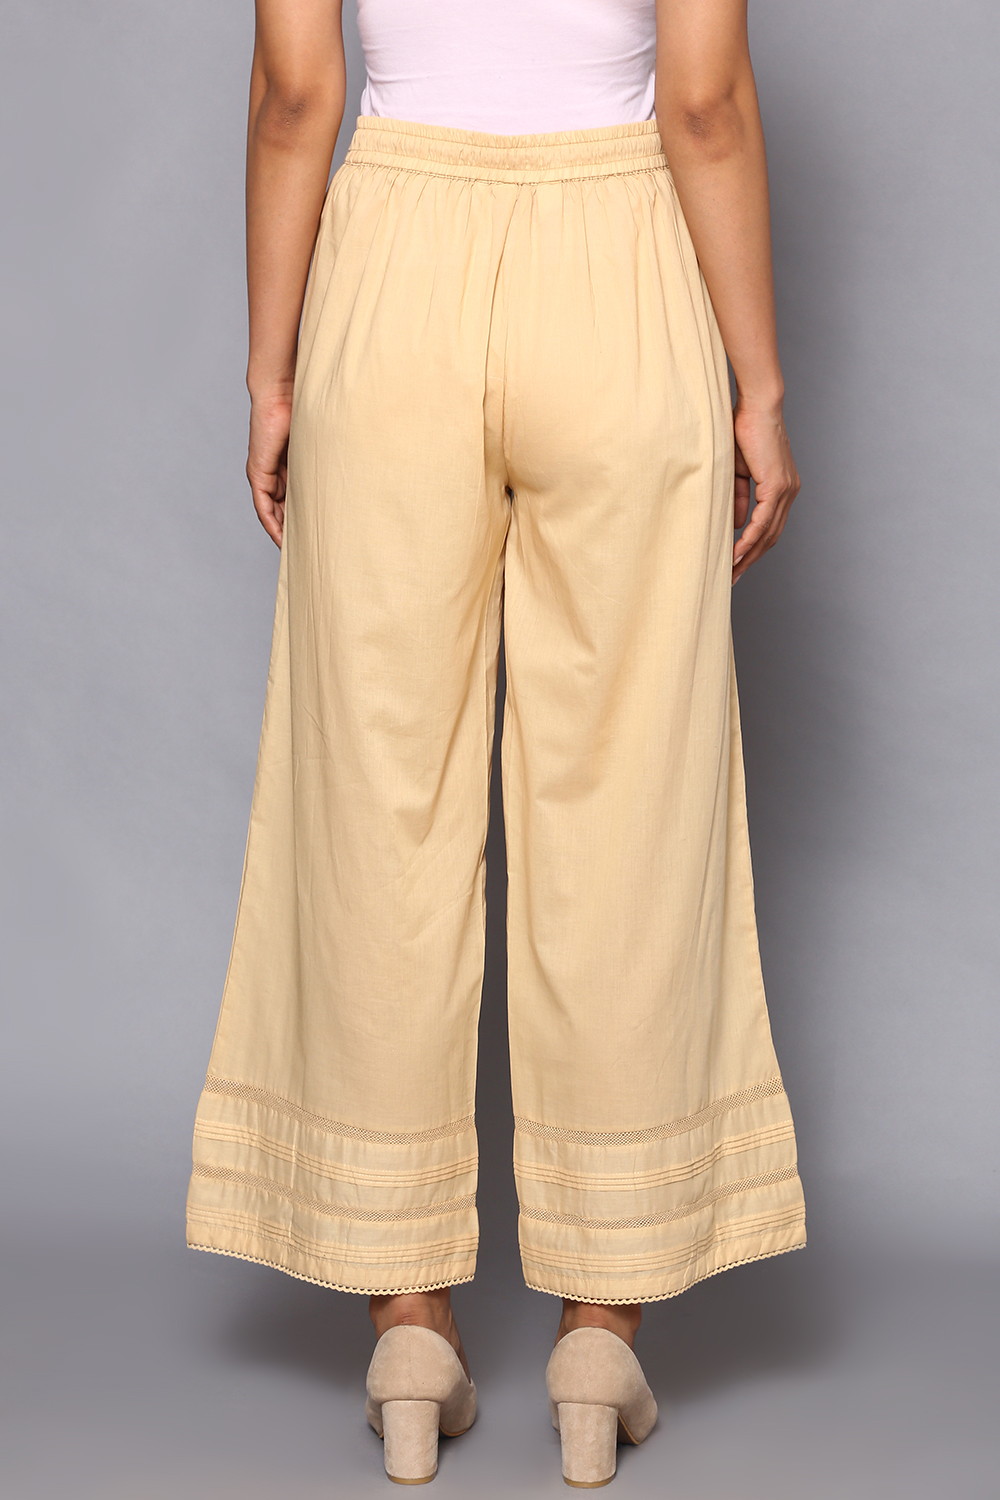 BIBA Women Regular Fit Bottom Wear,Beige, M : : Fashion